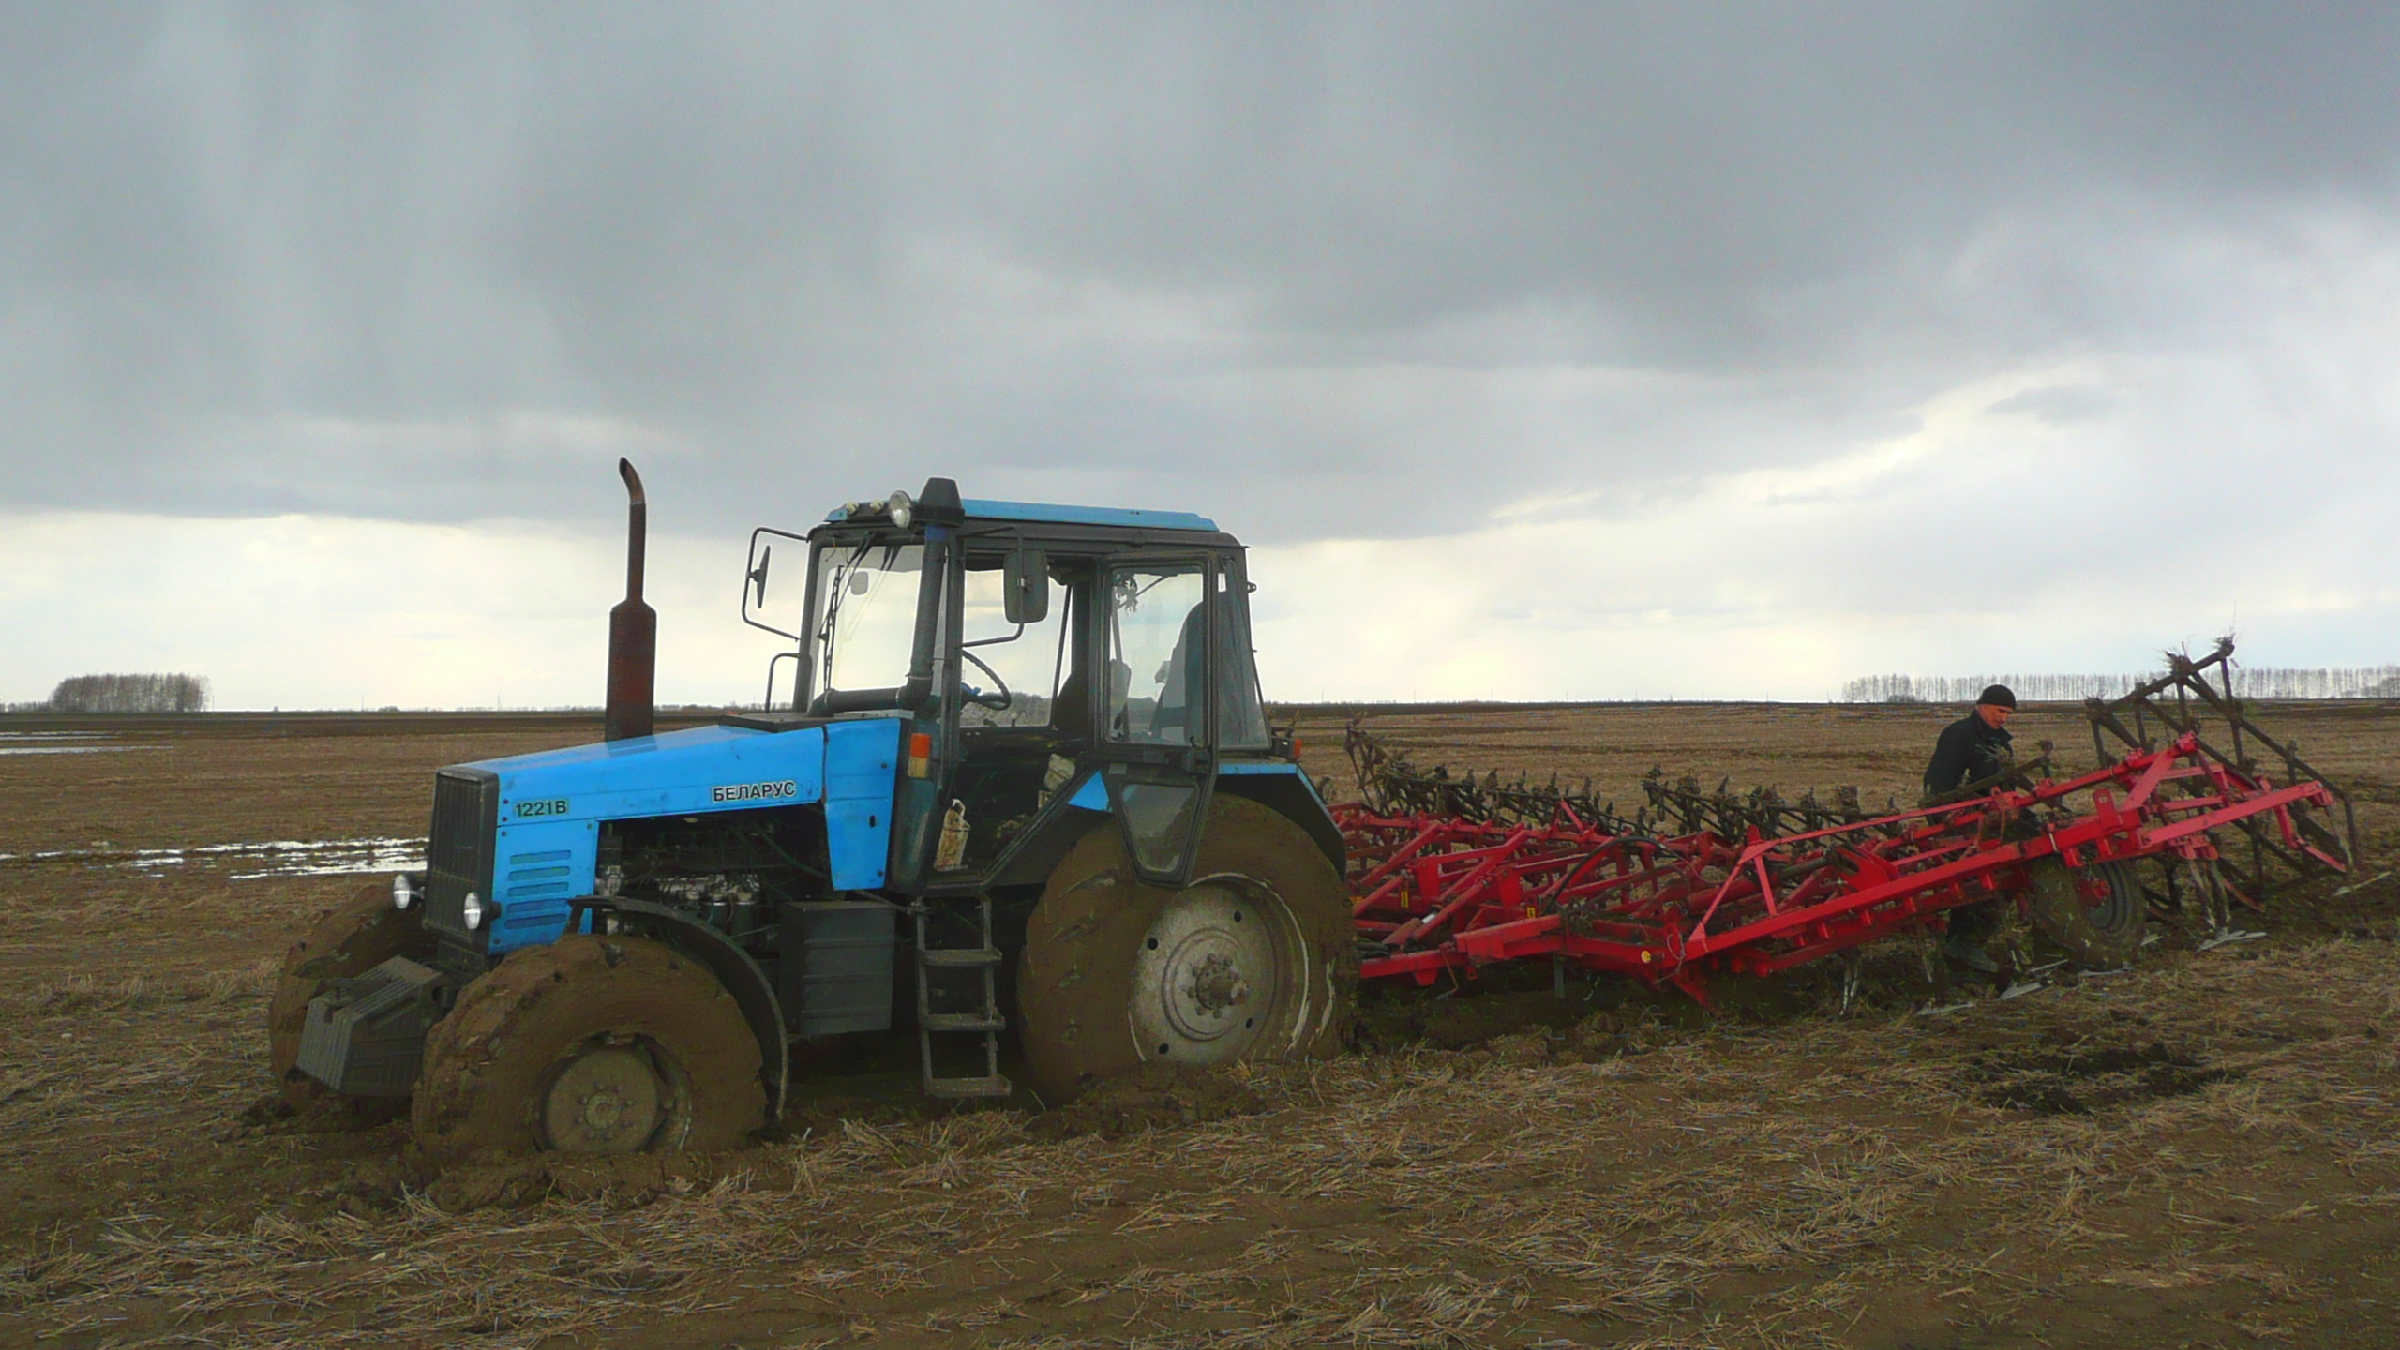 Работа мтз вакансии. Трактора МТЗ 1221 В грязи. Трактор т-150 вспашка зяби. Русские трактора в грязи. Т-150 (трактор) как буксует.